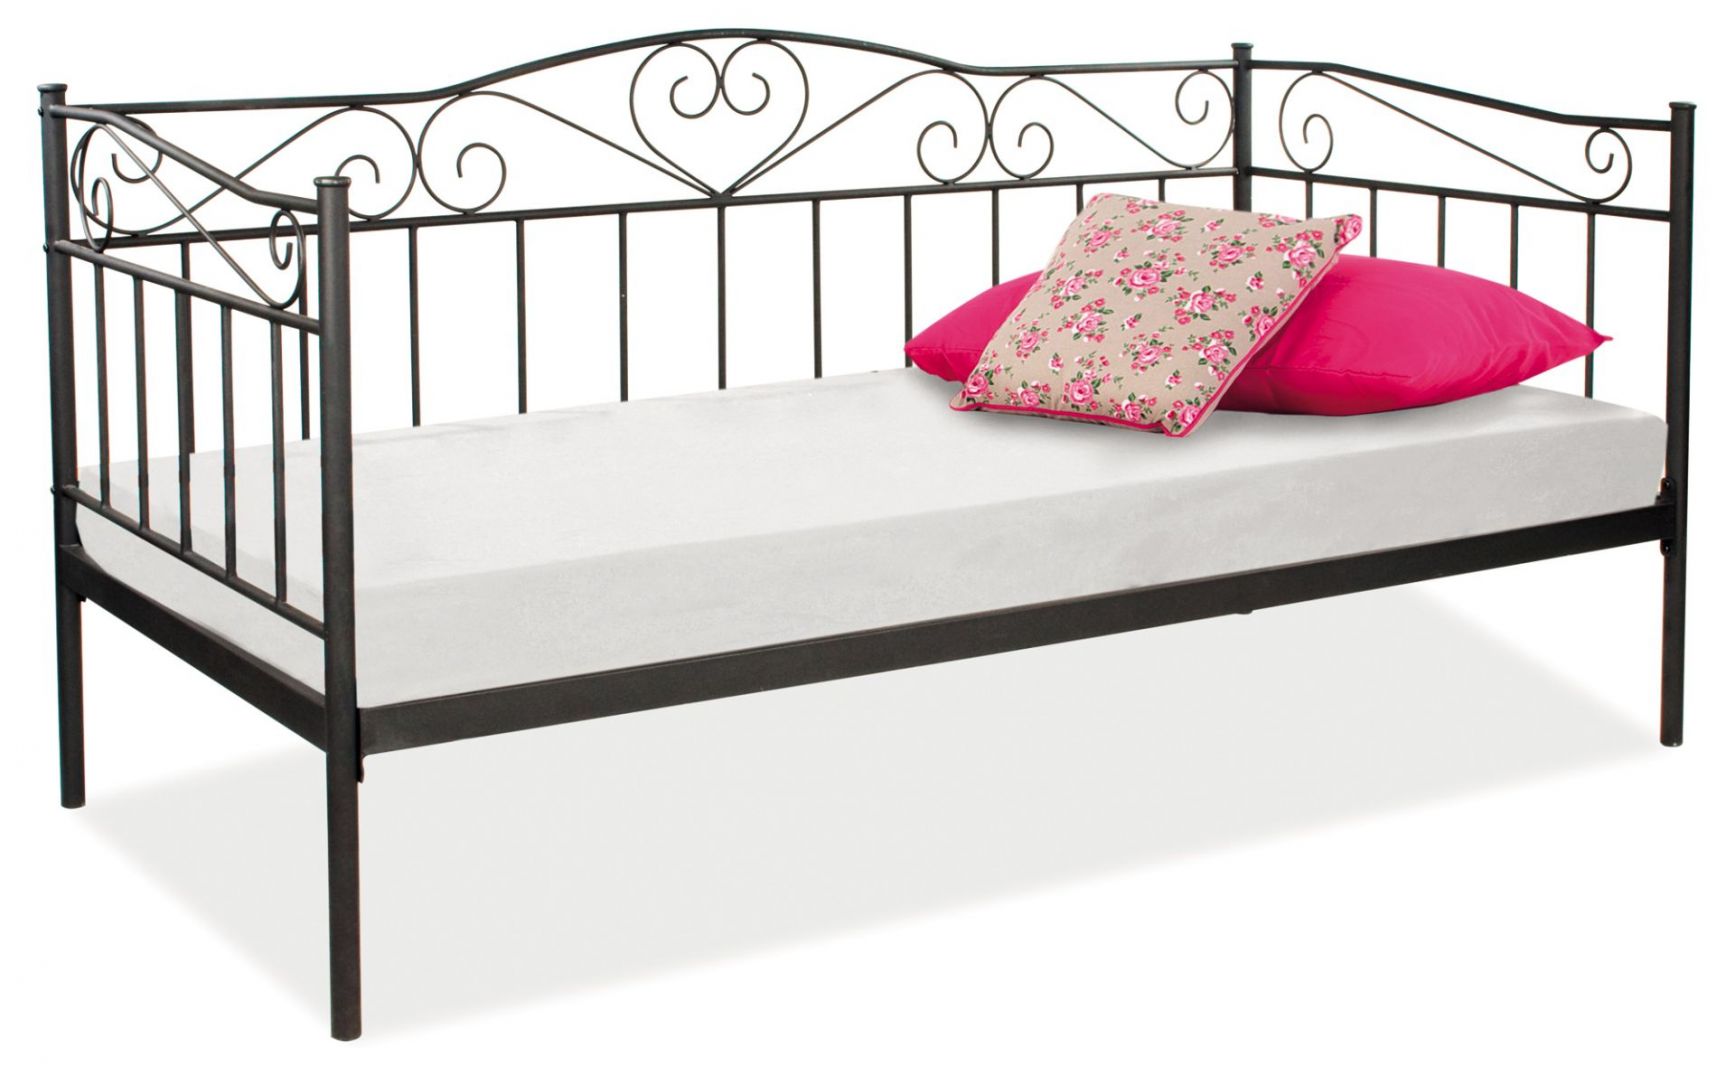 Metalowe łóżko Birma ma zdobioną, elegancką ramę. Dostępne jest w kolorze białym i czarnym. Przystosowane dla jednej osoby. Fot. Signal